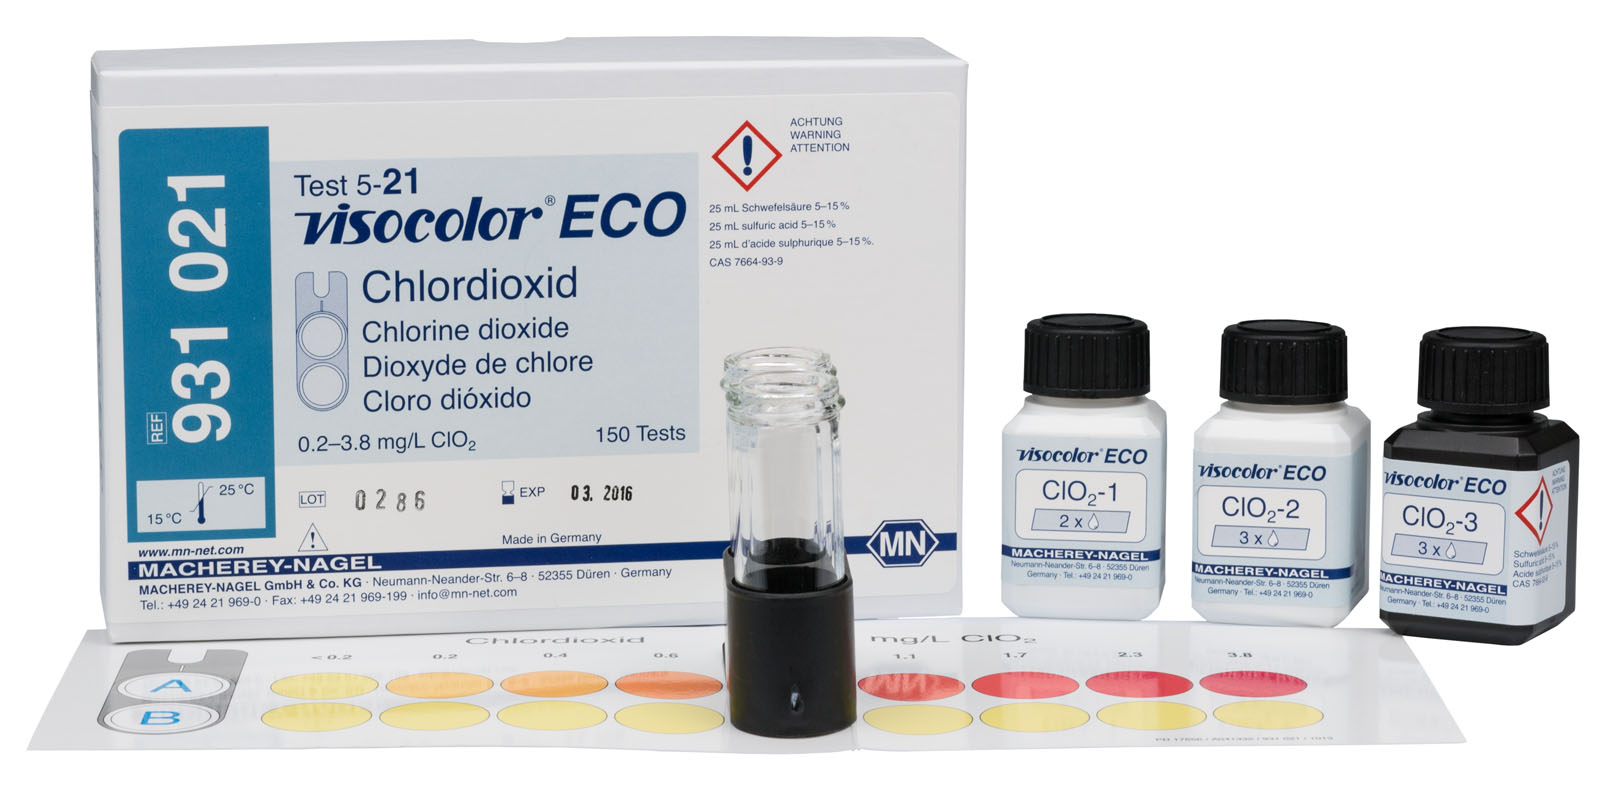 VISOCOLOR® ECO Chlorine Dioxide Test Kit